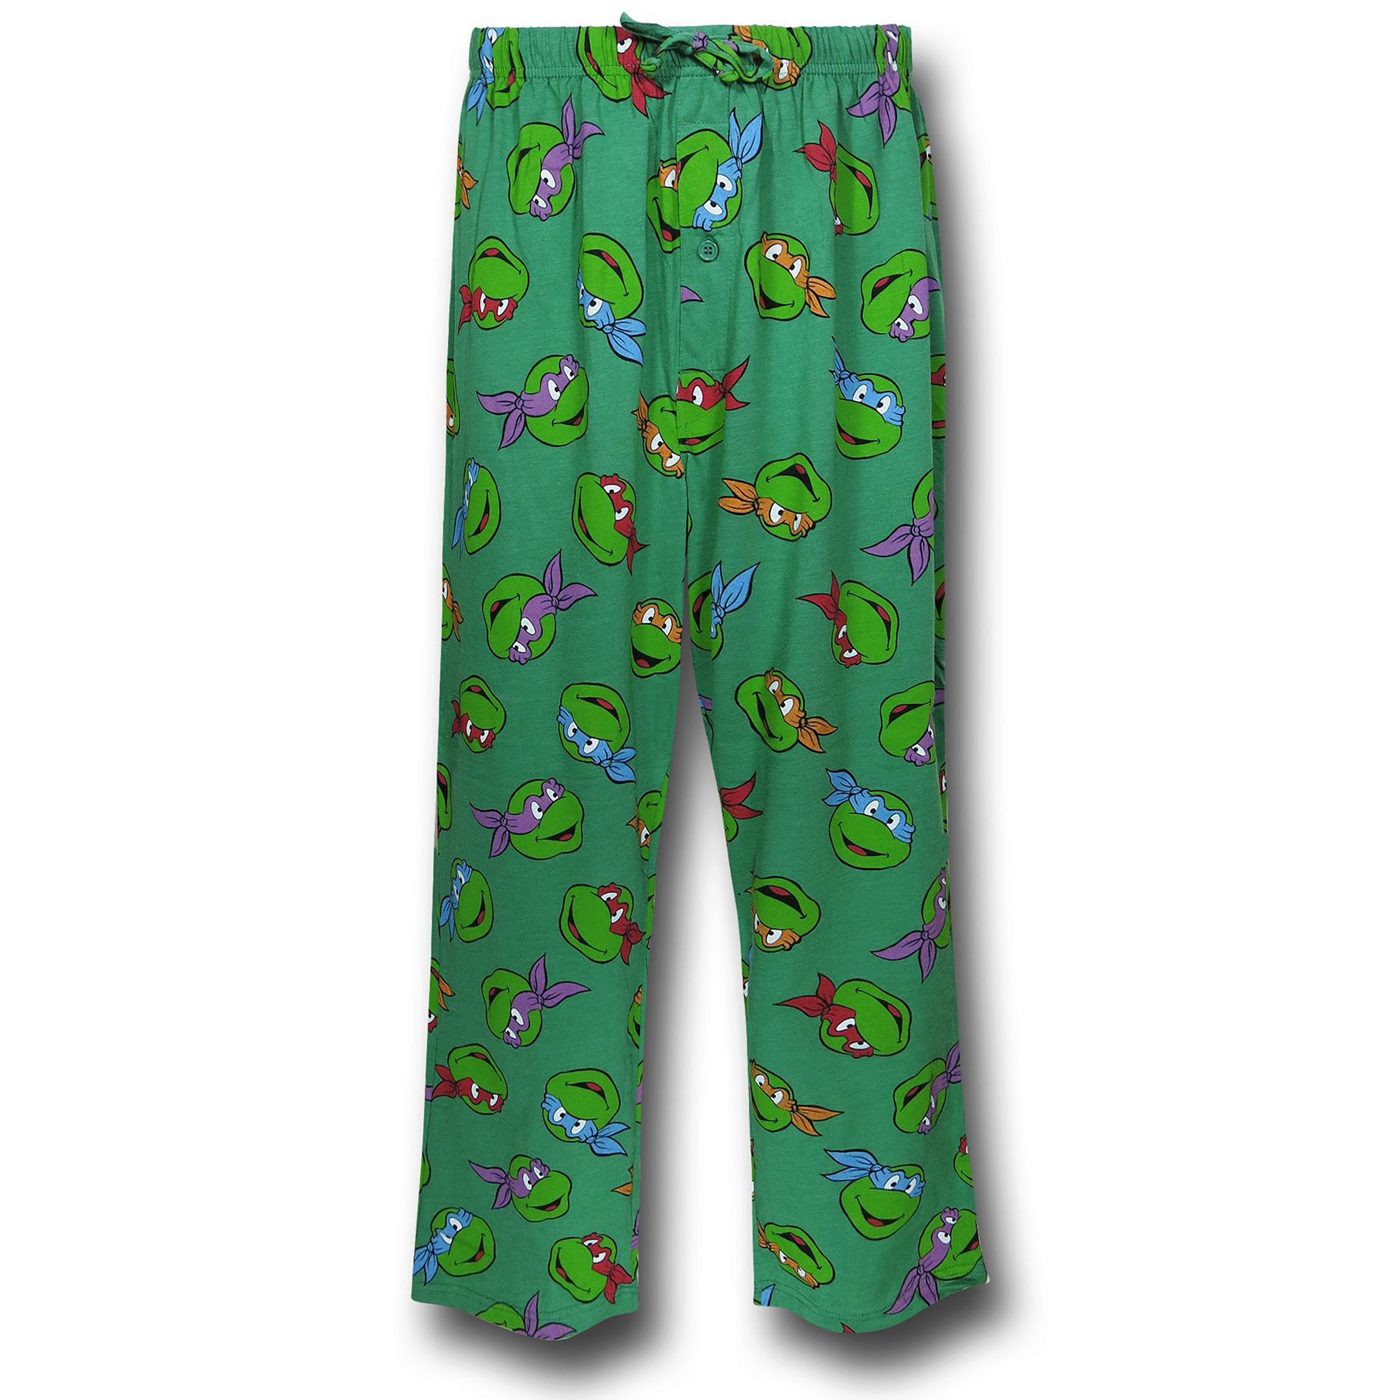 Teenage Mutant Ninja Turtles Pajama Pants